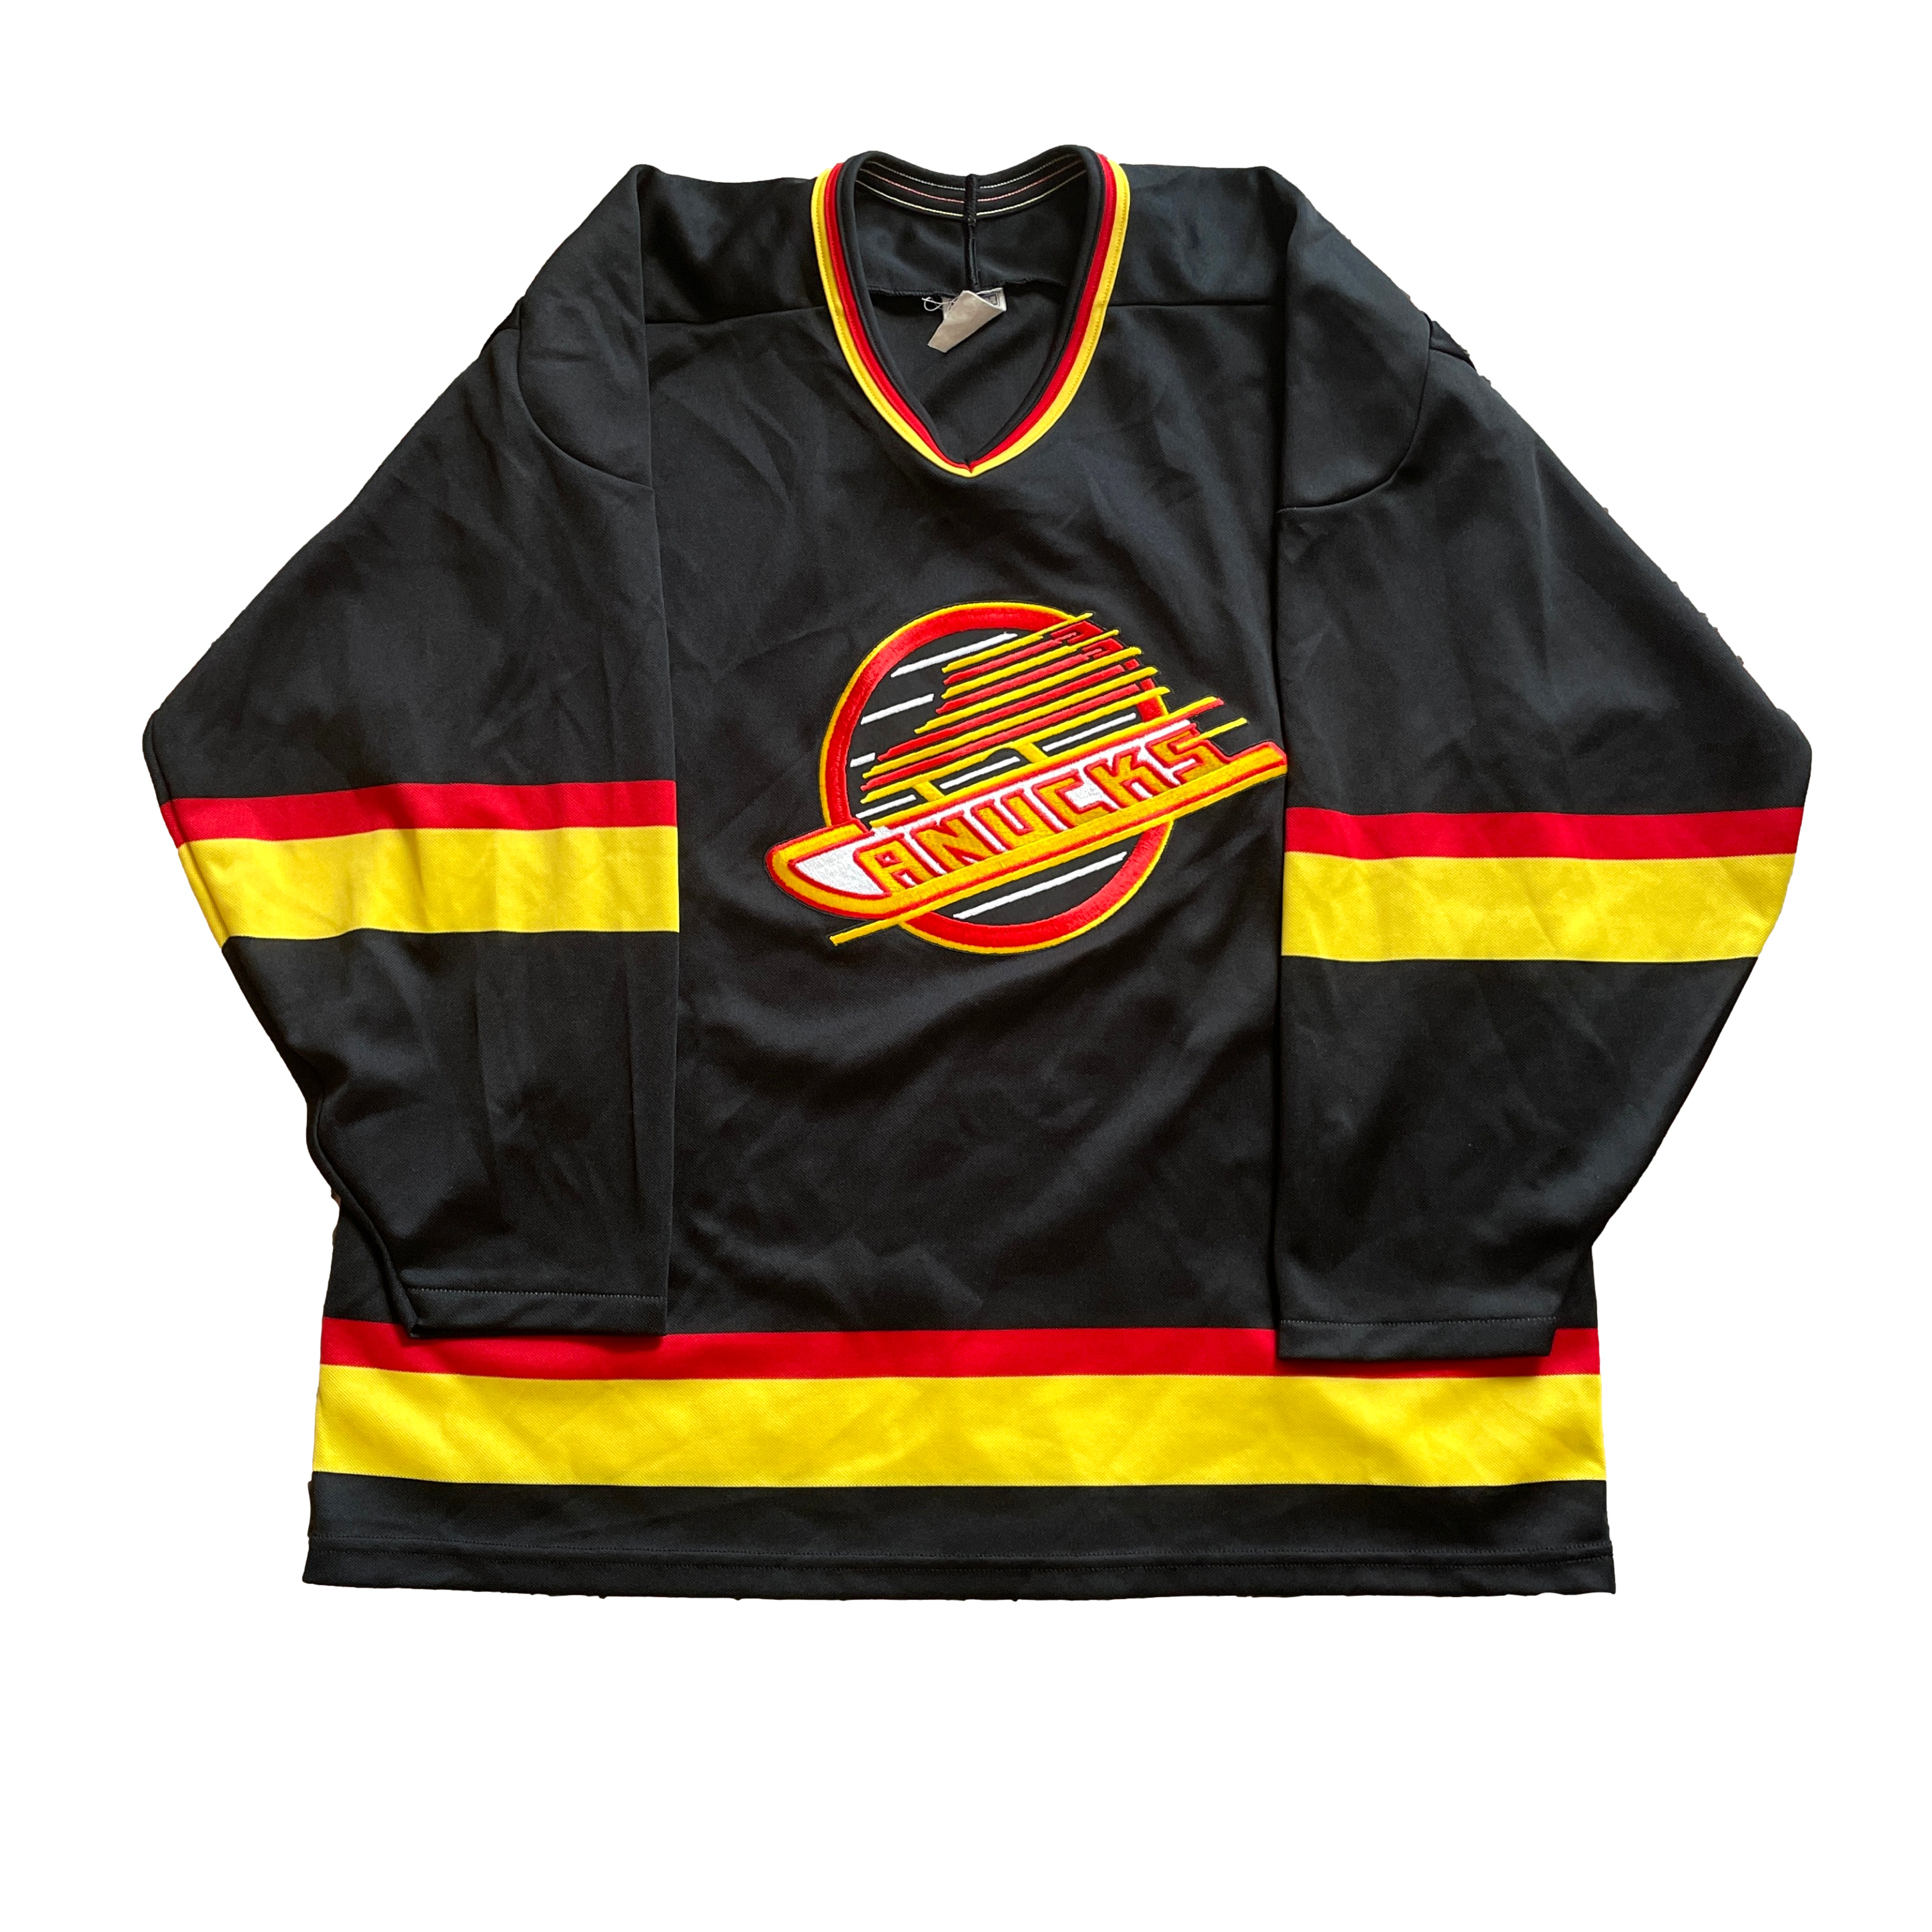 Vintage Vancouver Canucks NHL Hockey Jersey (XL)